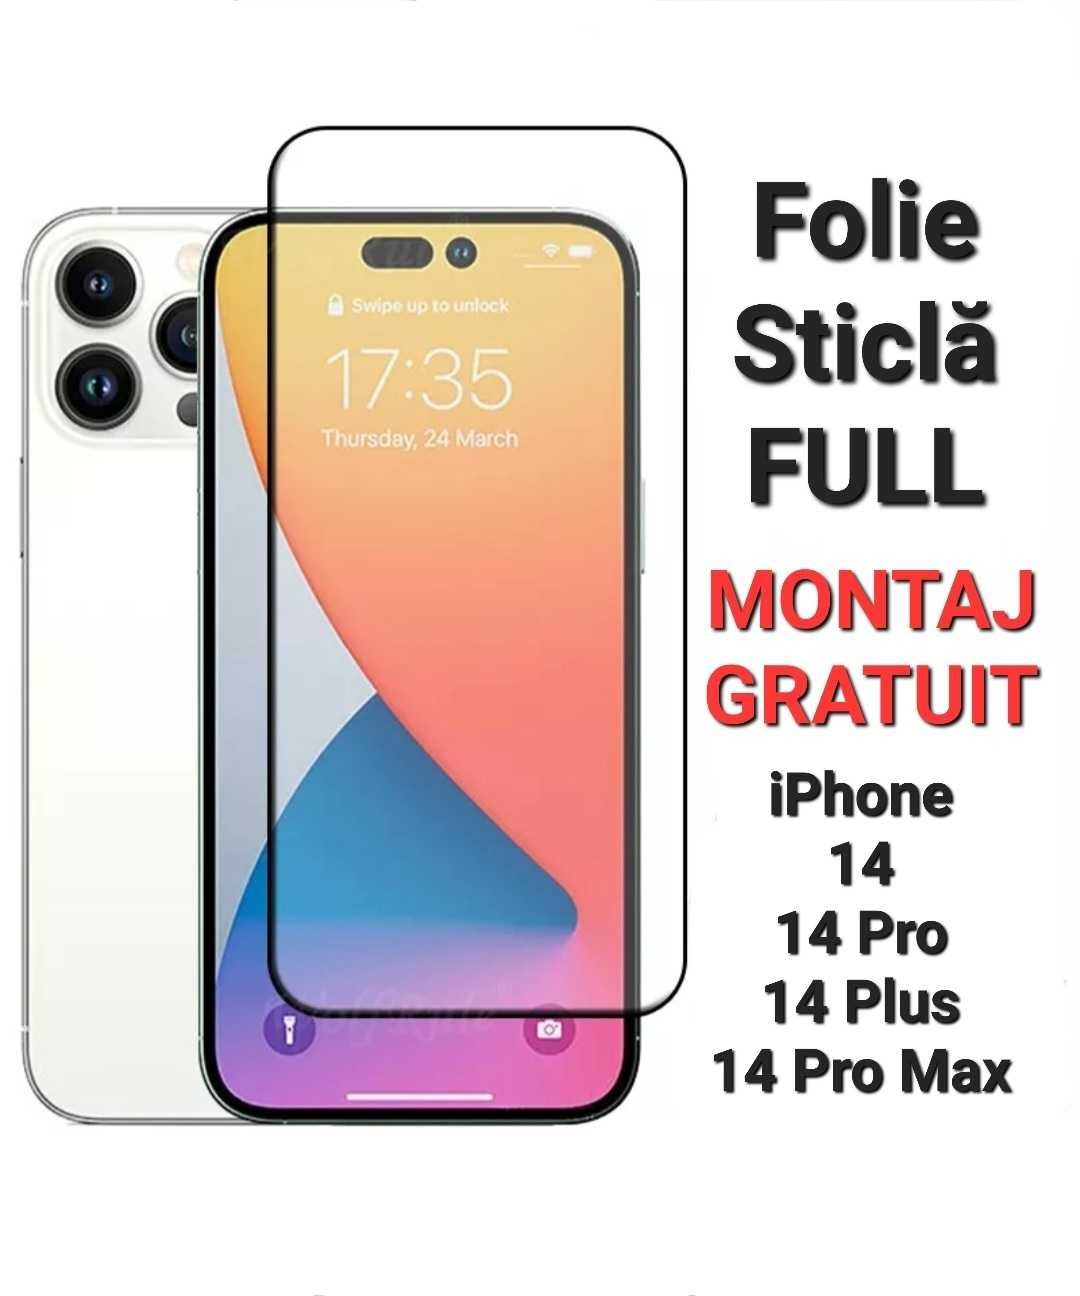 Folie Sticla Full iPhone 11 / 12 / 13 / 14 Pro / Pro Max / X XR XS Max